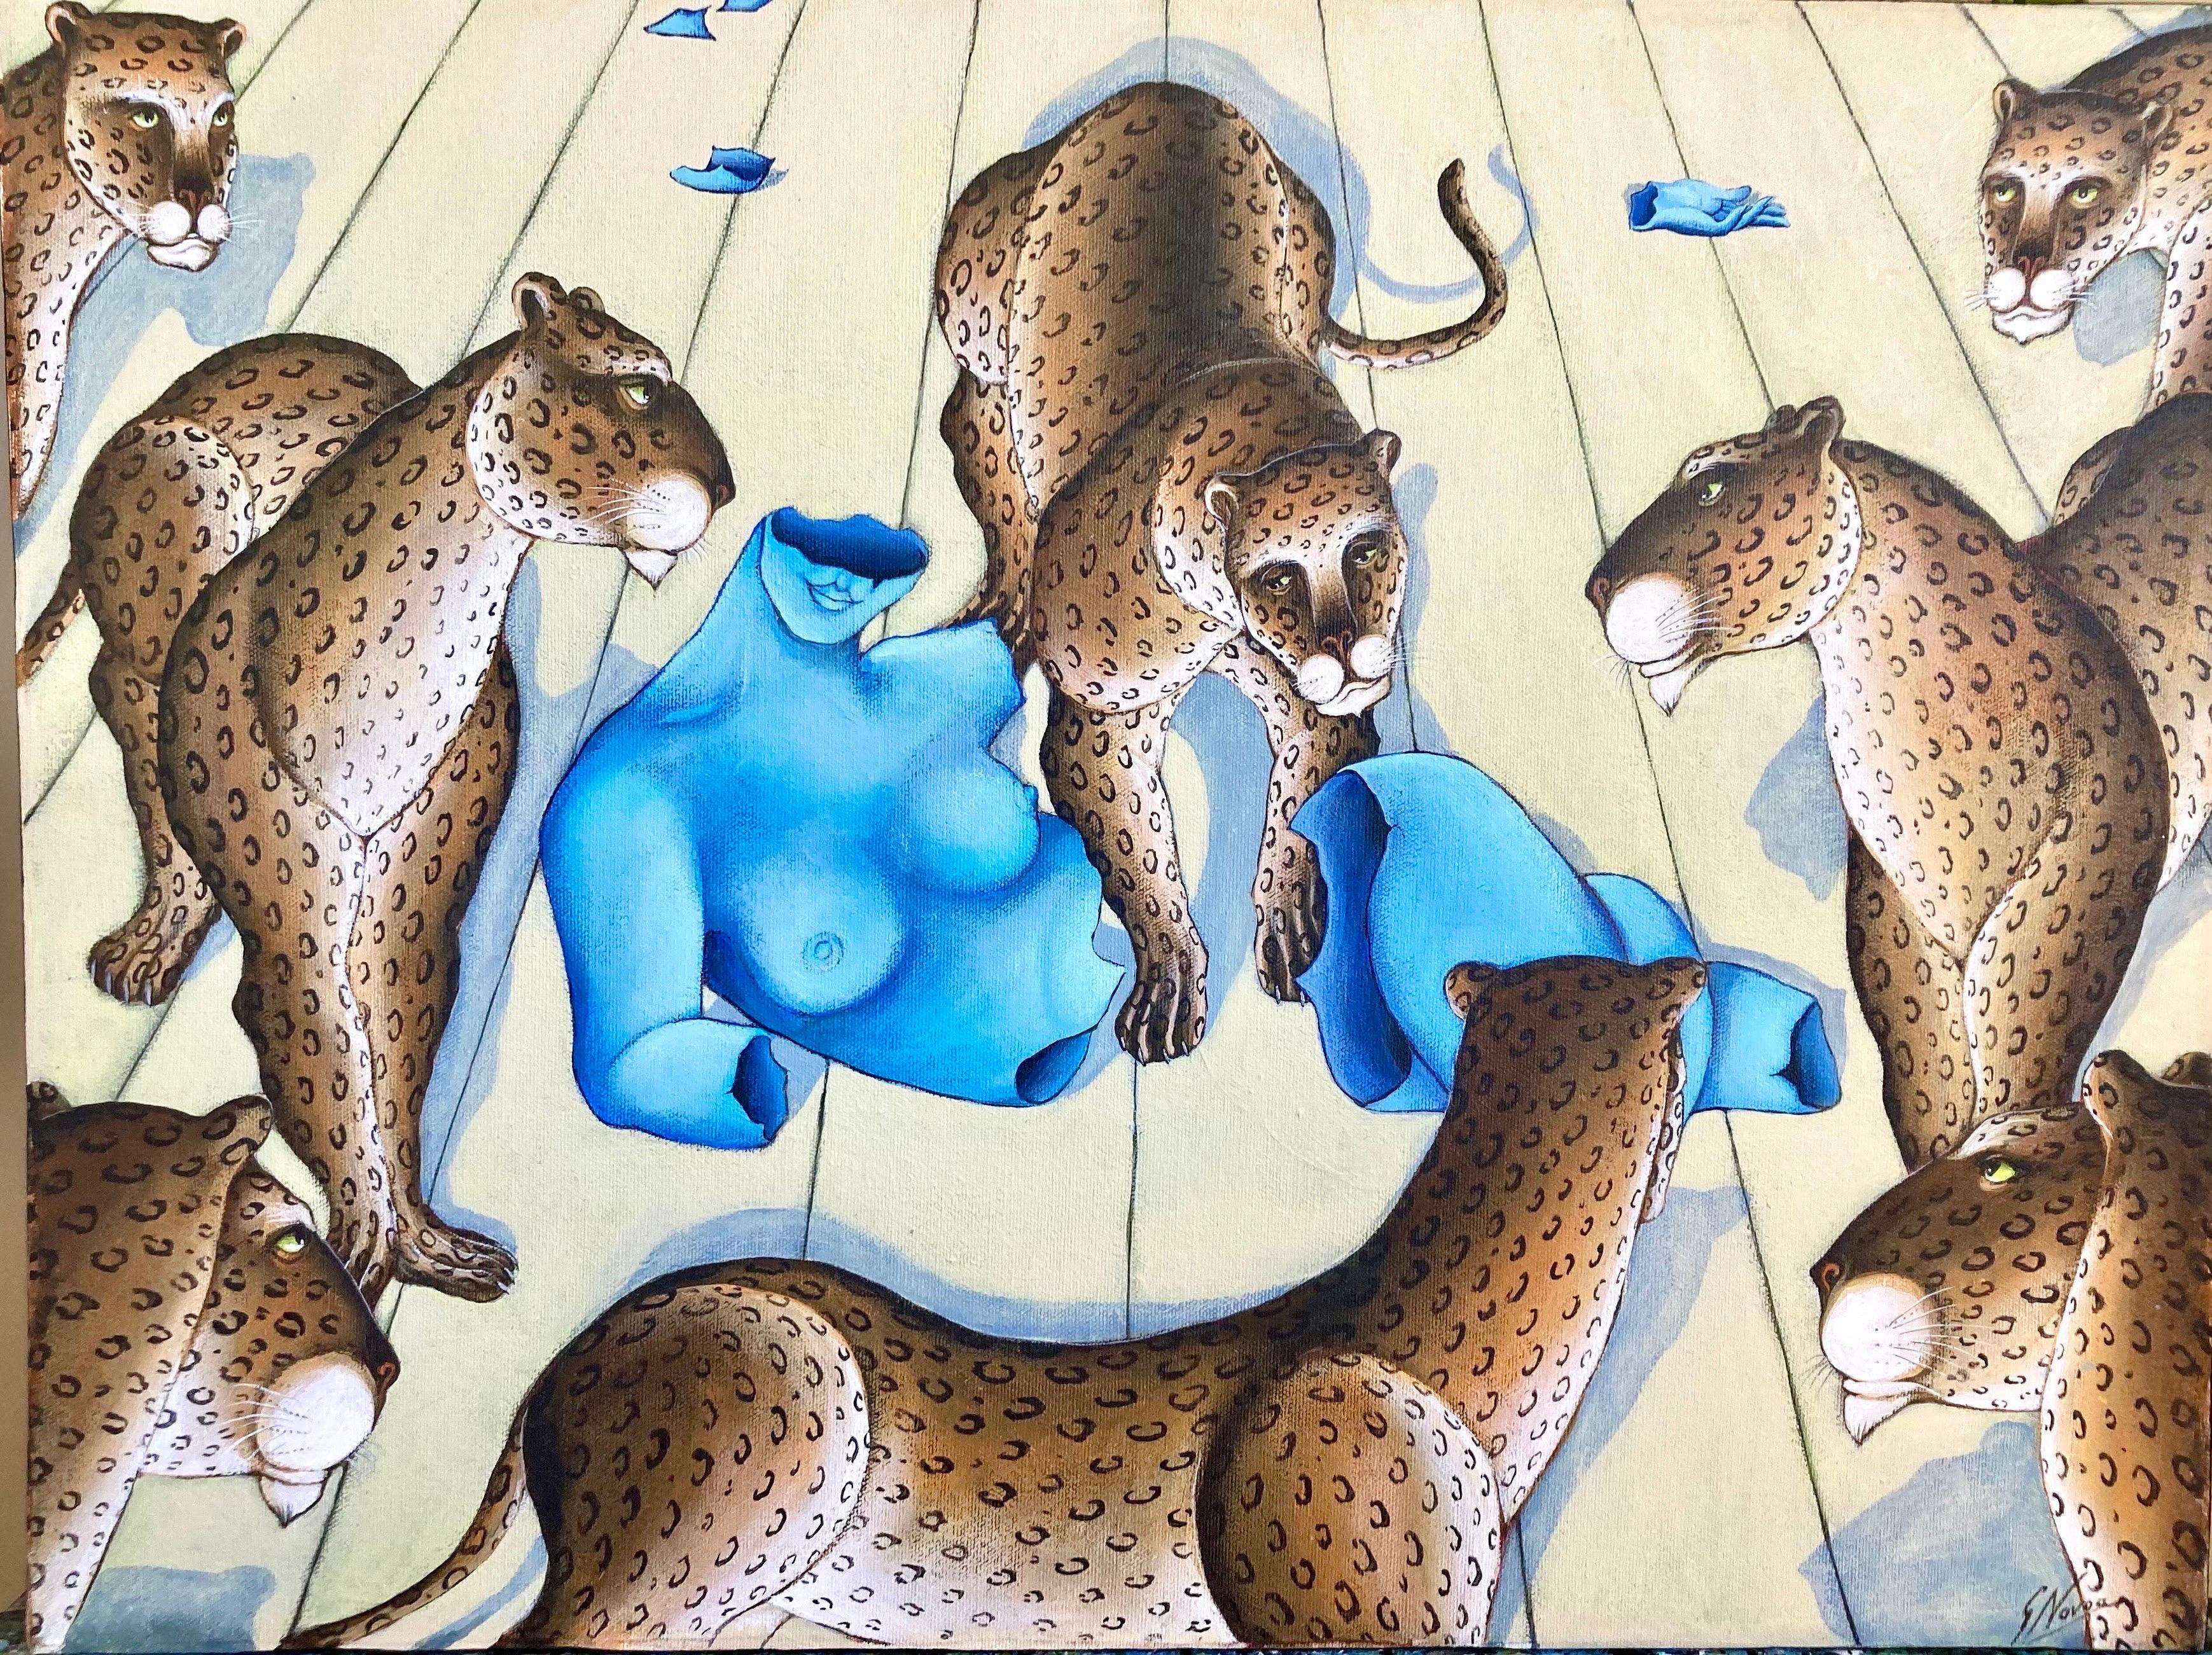 Originalgemälde Leoparden  um eine blaue Venus-Akt-Skulptur herum. tropische Dschungelumgebung. Titel: "Blaue Venus".
Rekto handsigniert und verso signiert, betitelt und datiert. 

Gustavo Novoa, geboren 1941 in Santiago, Chile, besuchte die